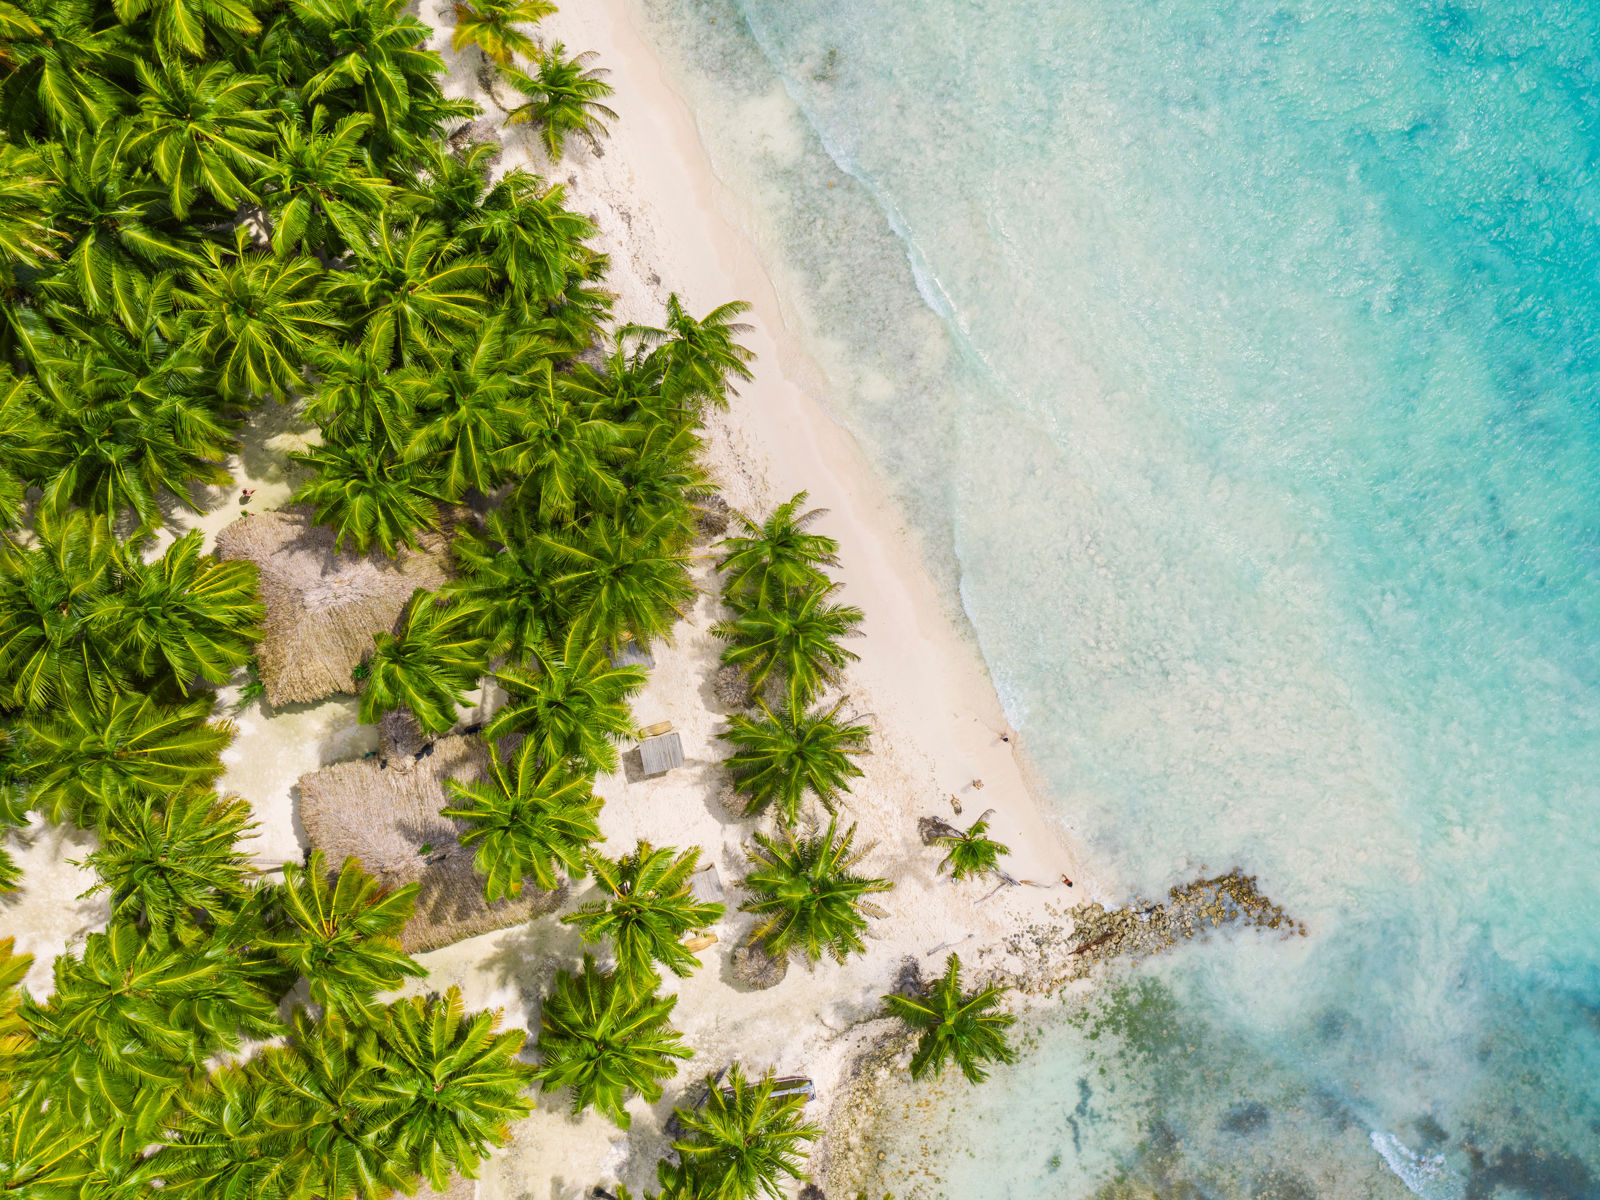 Over udsigt over tropiske palmer, der møder stranden og det blå hav